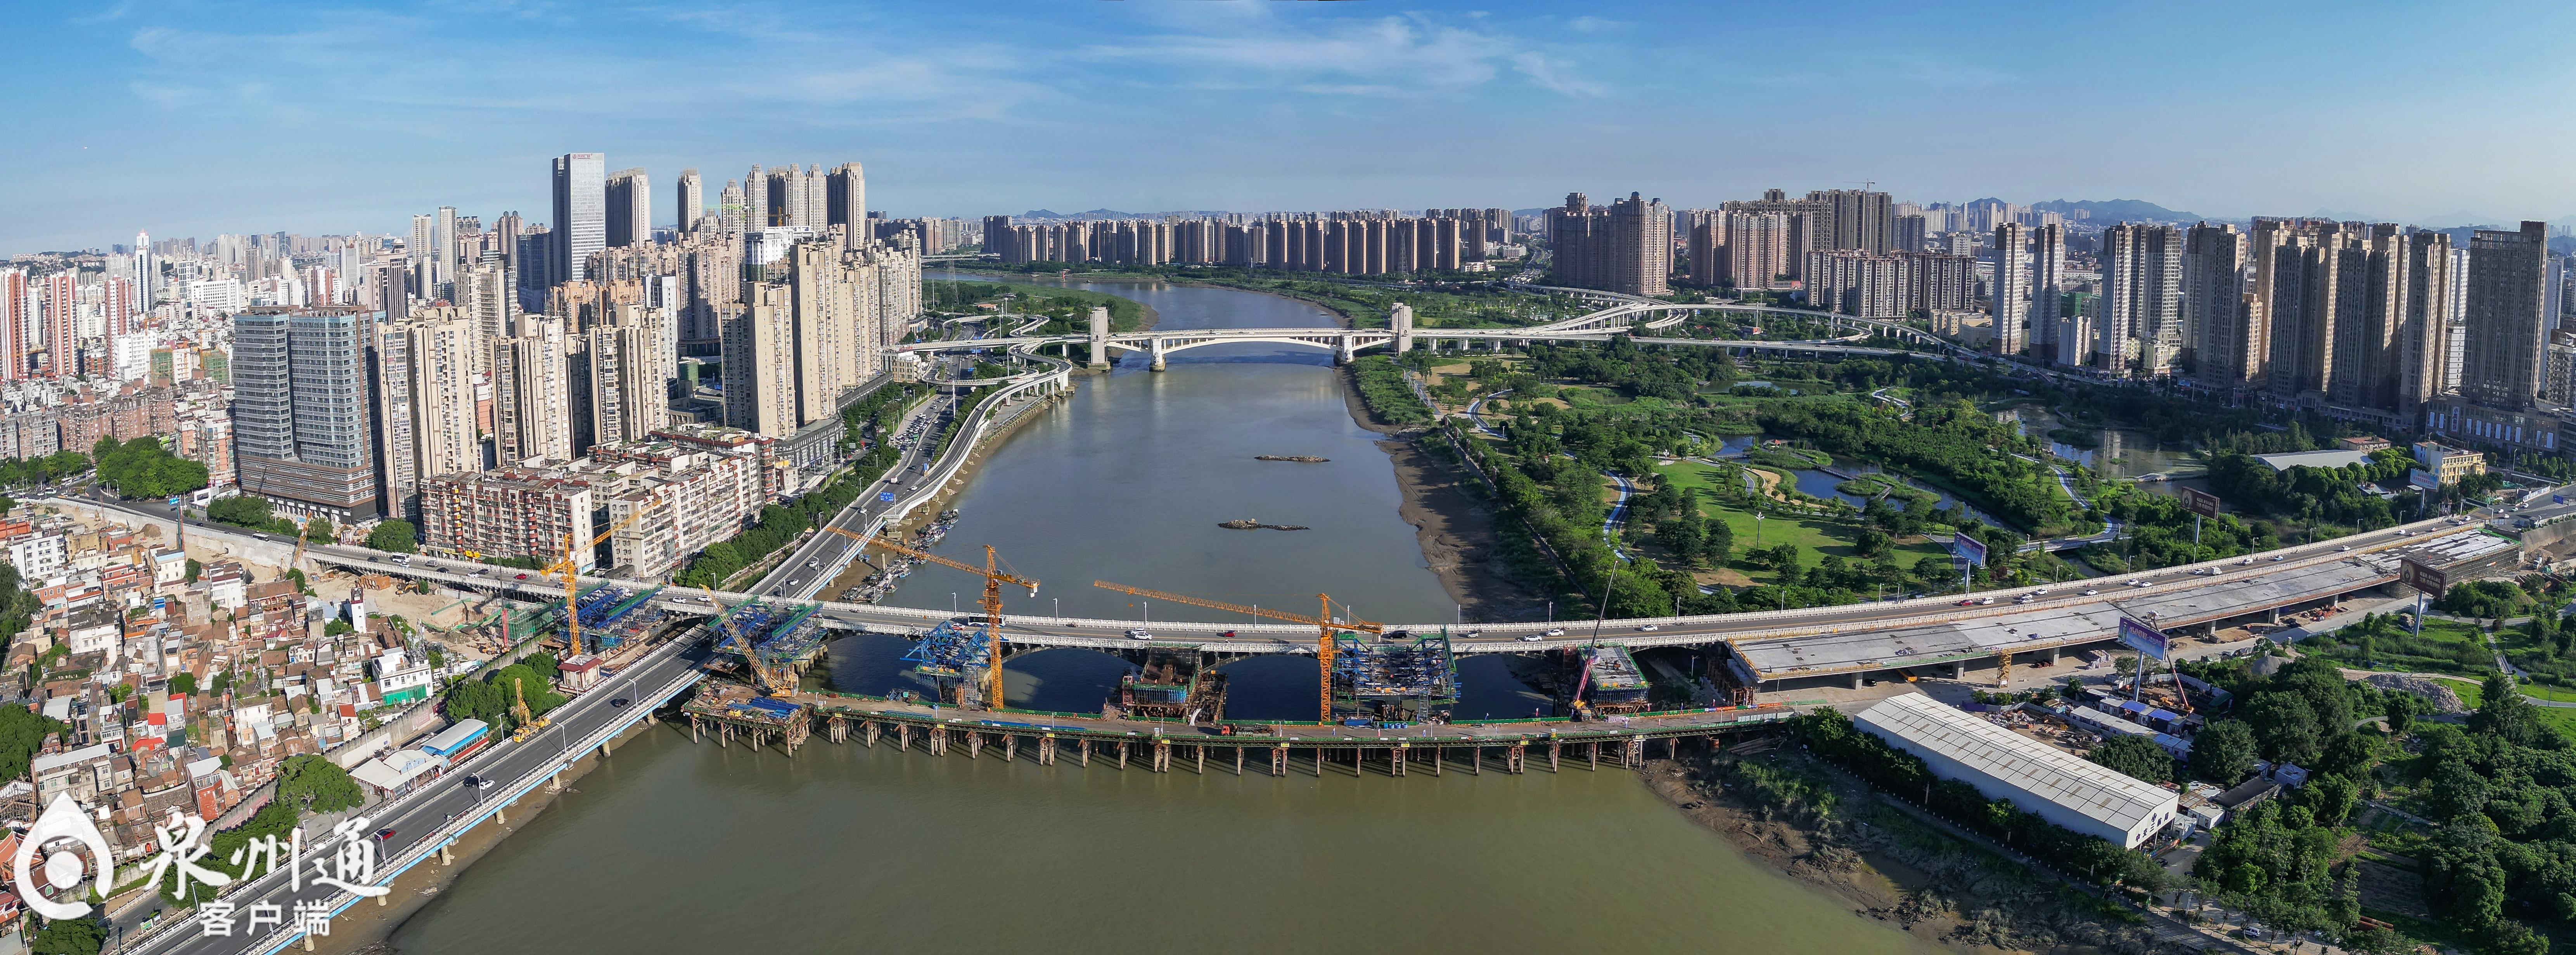 泉州大桥扩改工程晋江南岸现浇箱梁完工